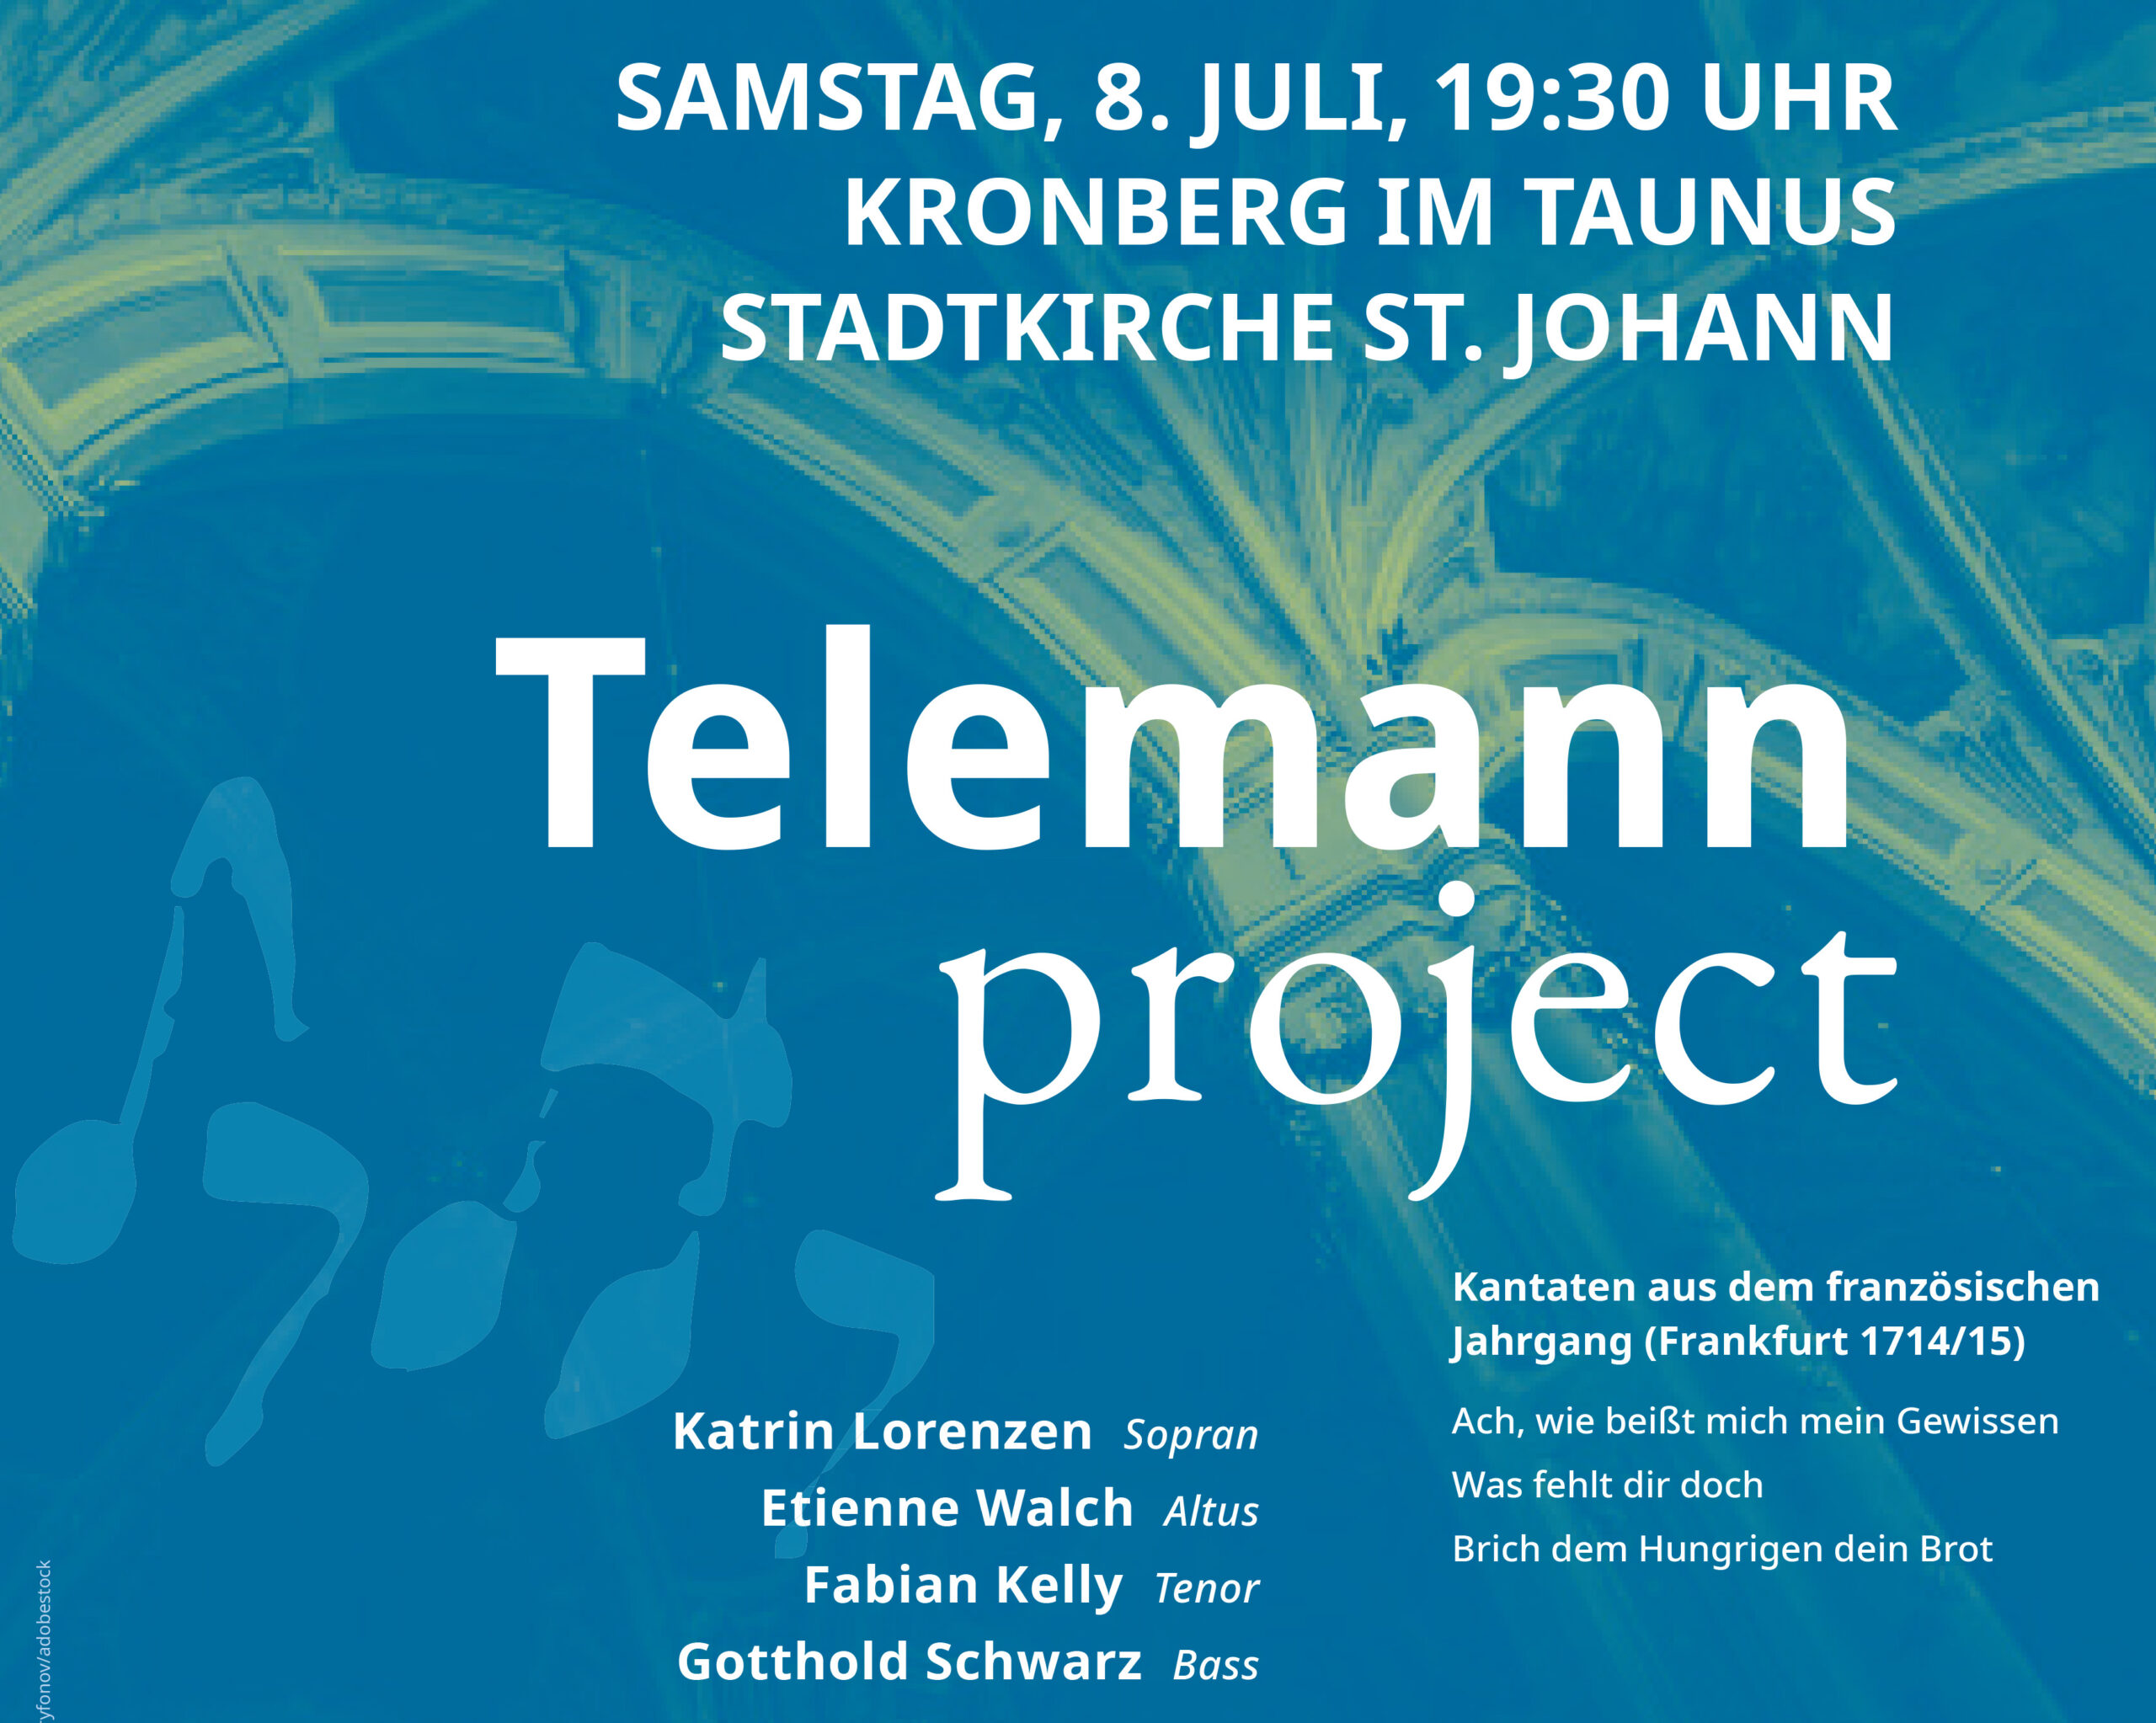 Konzert des Telemann Project in Kronberg/Taunus